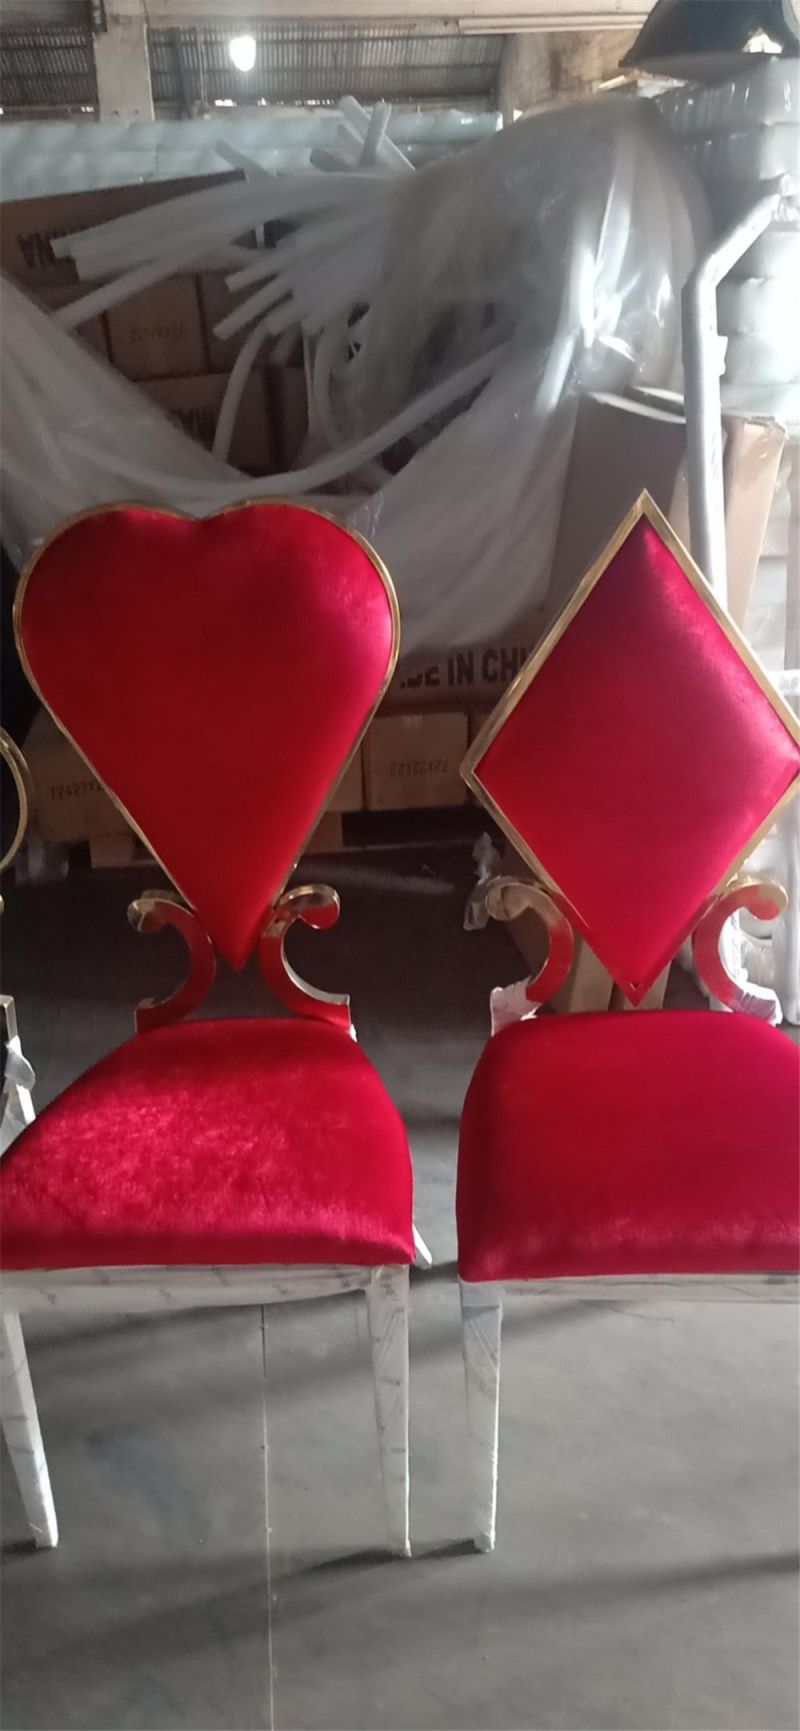 Restaurant Dining Chair Black Velvet Stainless Steel Heart Shape Back Designed New Banquet Chair